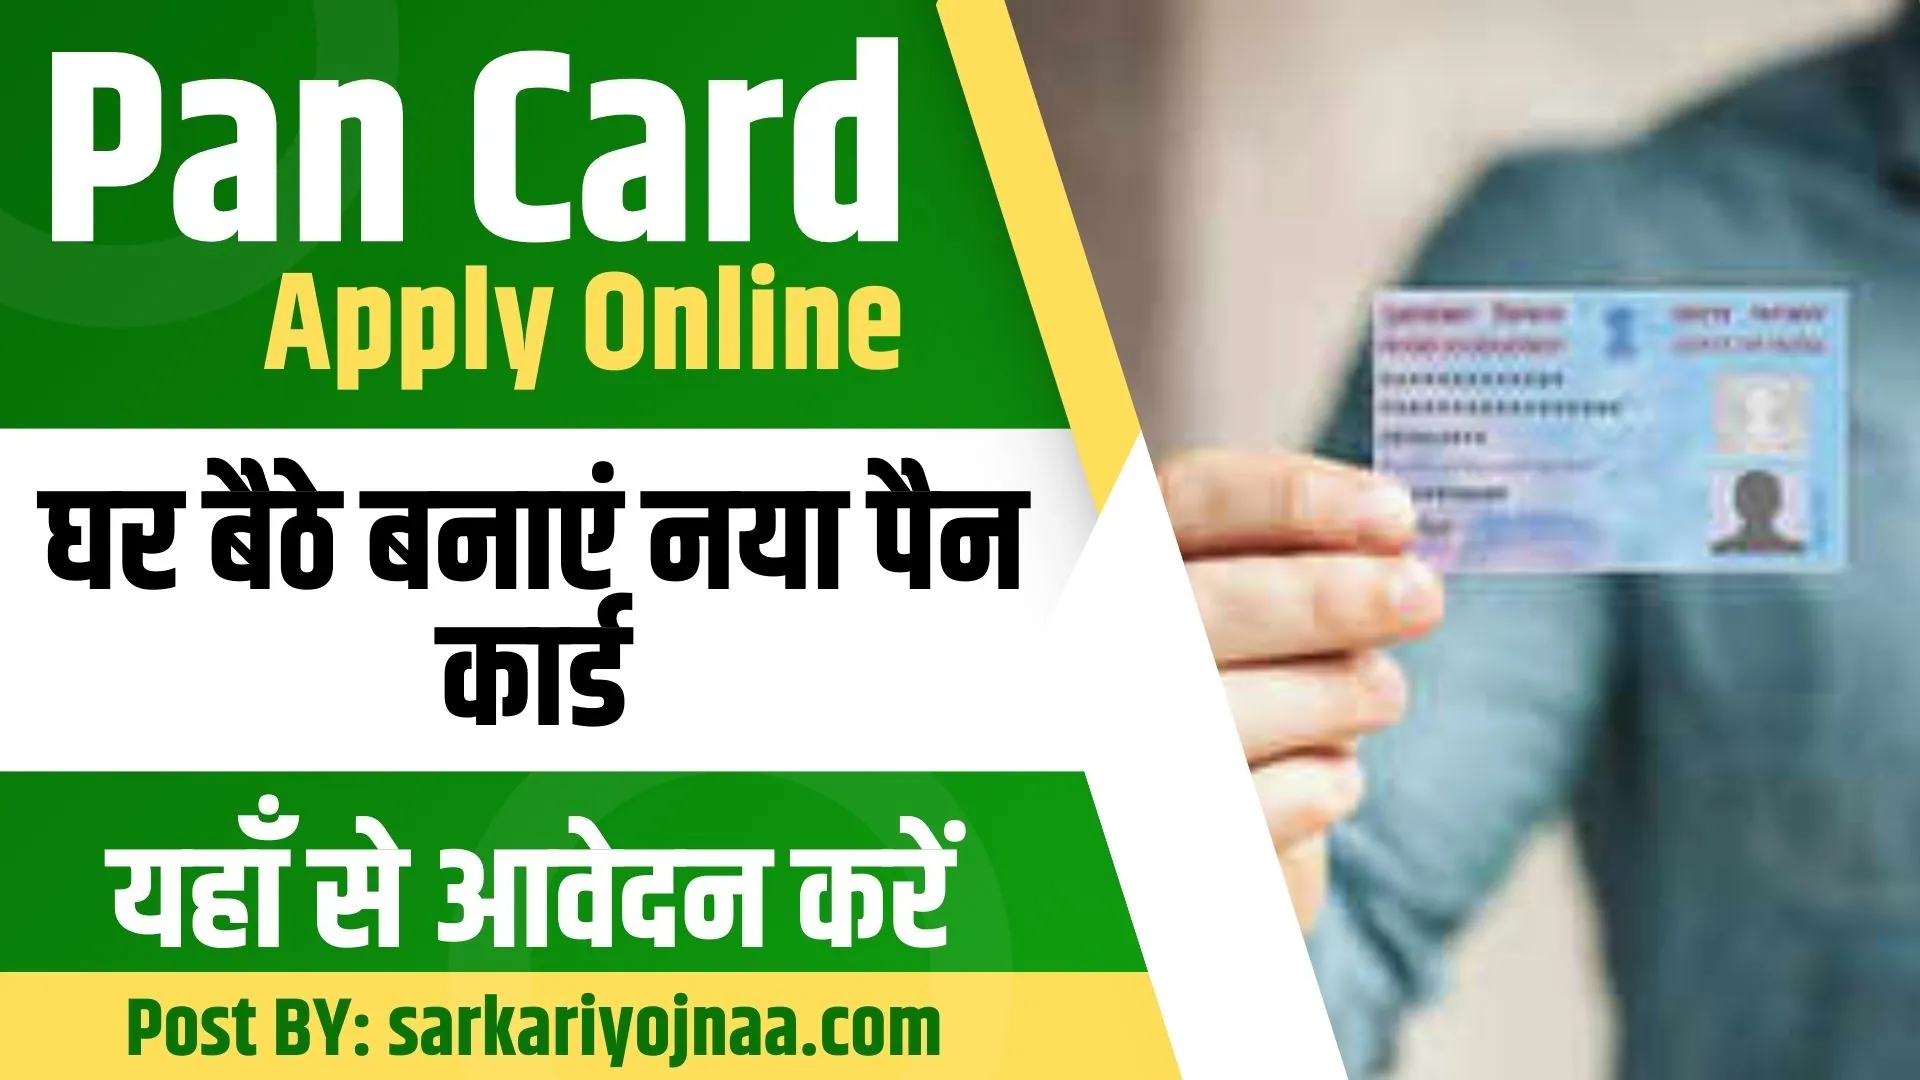 Pan Card Apply Online: घर बैठे बनाएं नया पैन कार्ड, यहाँ से आवेदन करें